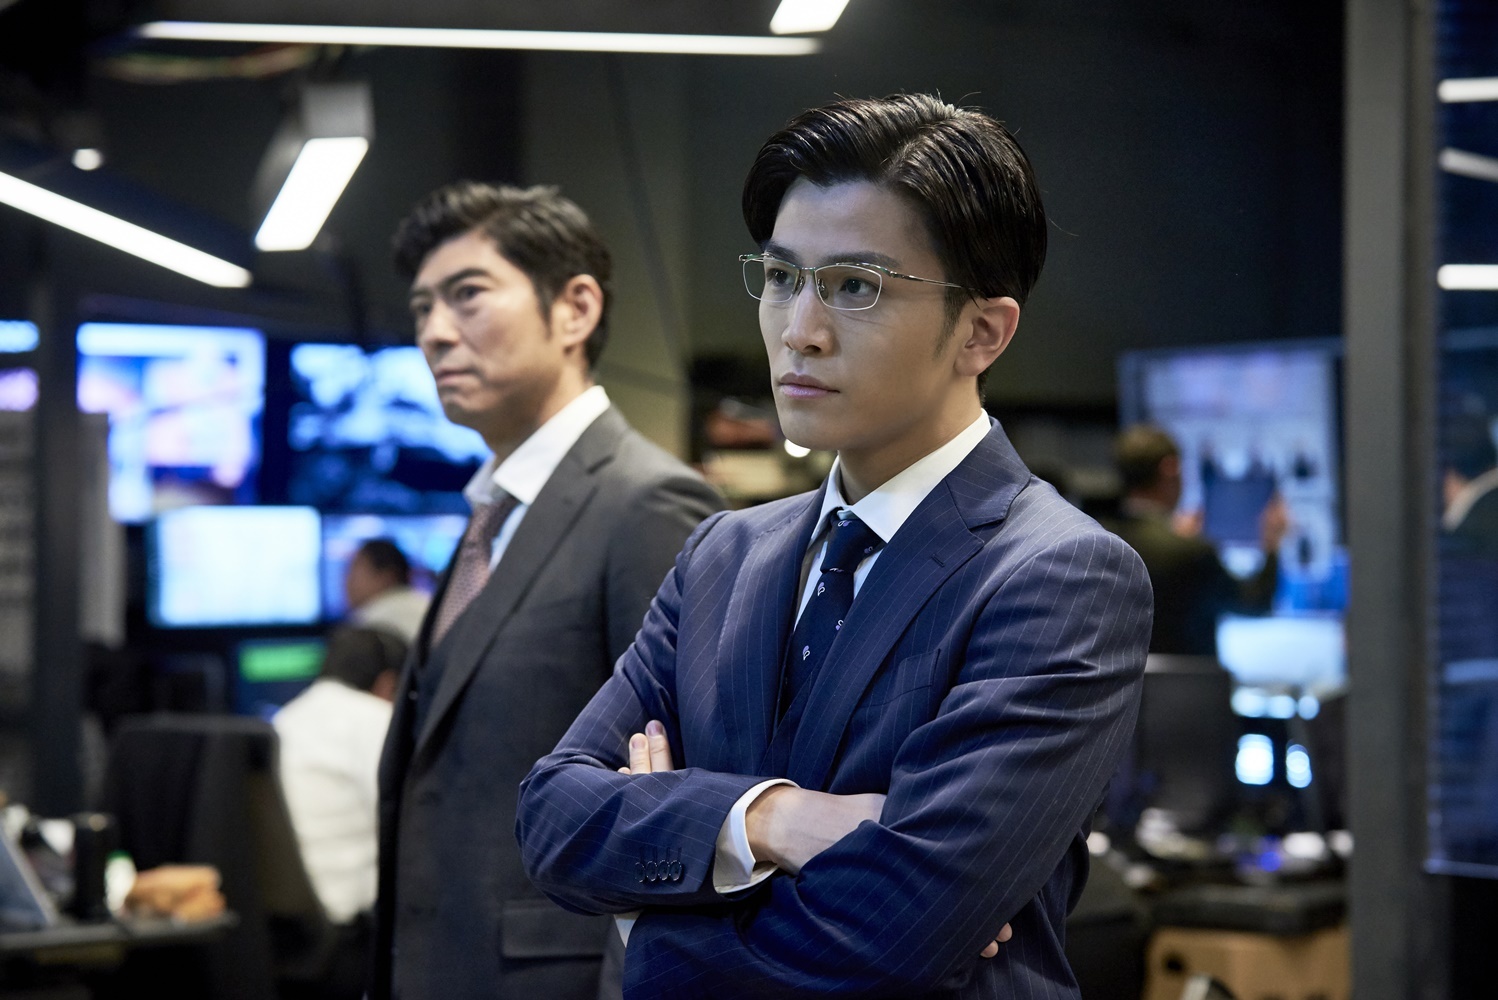 左から、髙嶋政宏、岩田剛典（EXILE／三代目 J Soul Brothers） （C）2019 映画「AI 崩壊」製作委員会